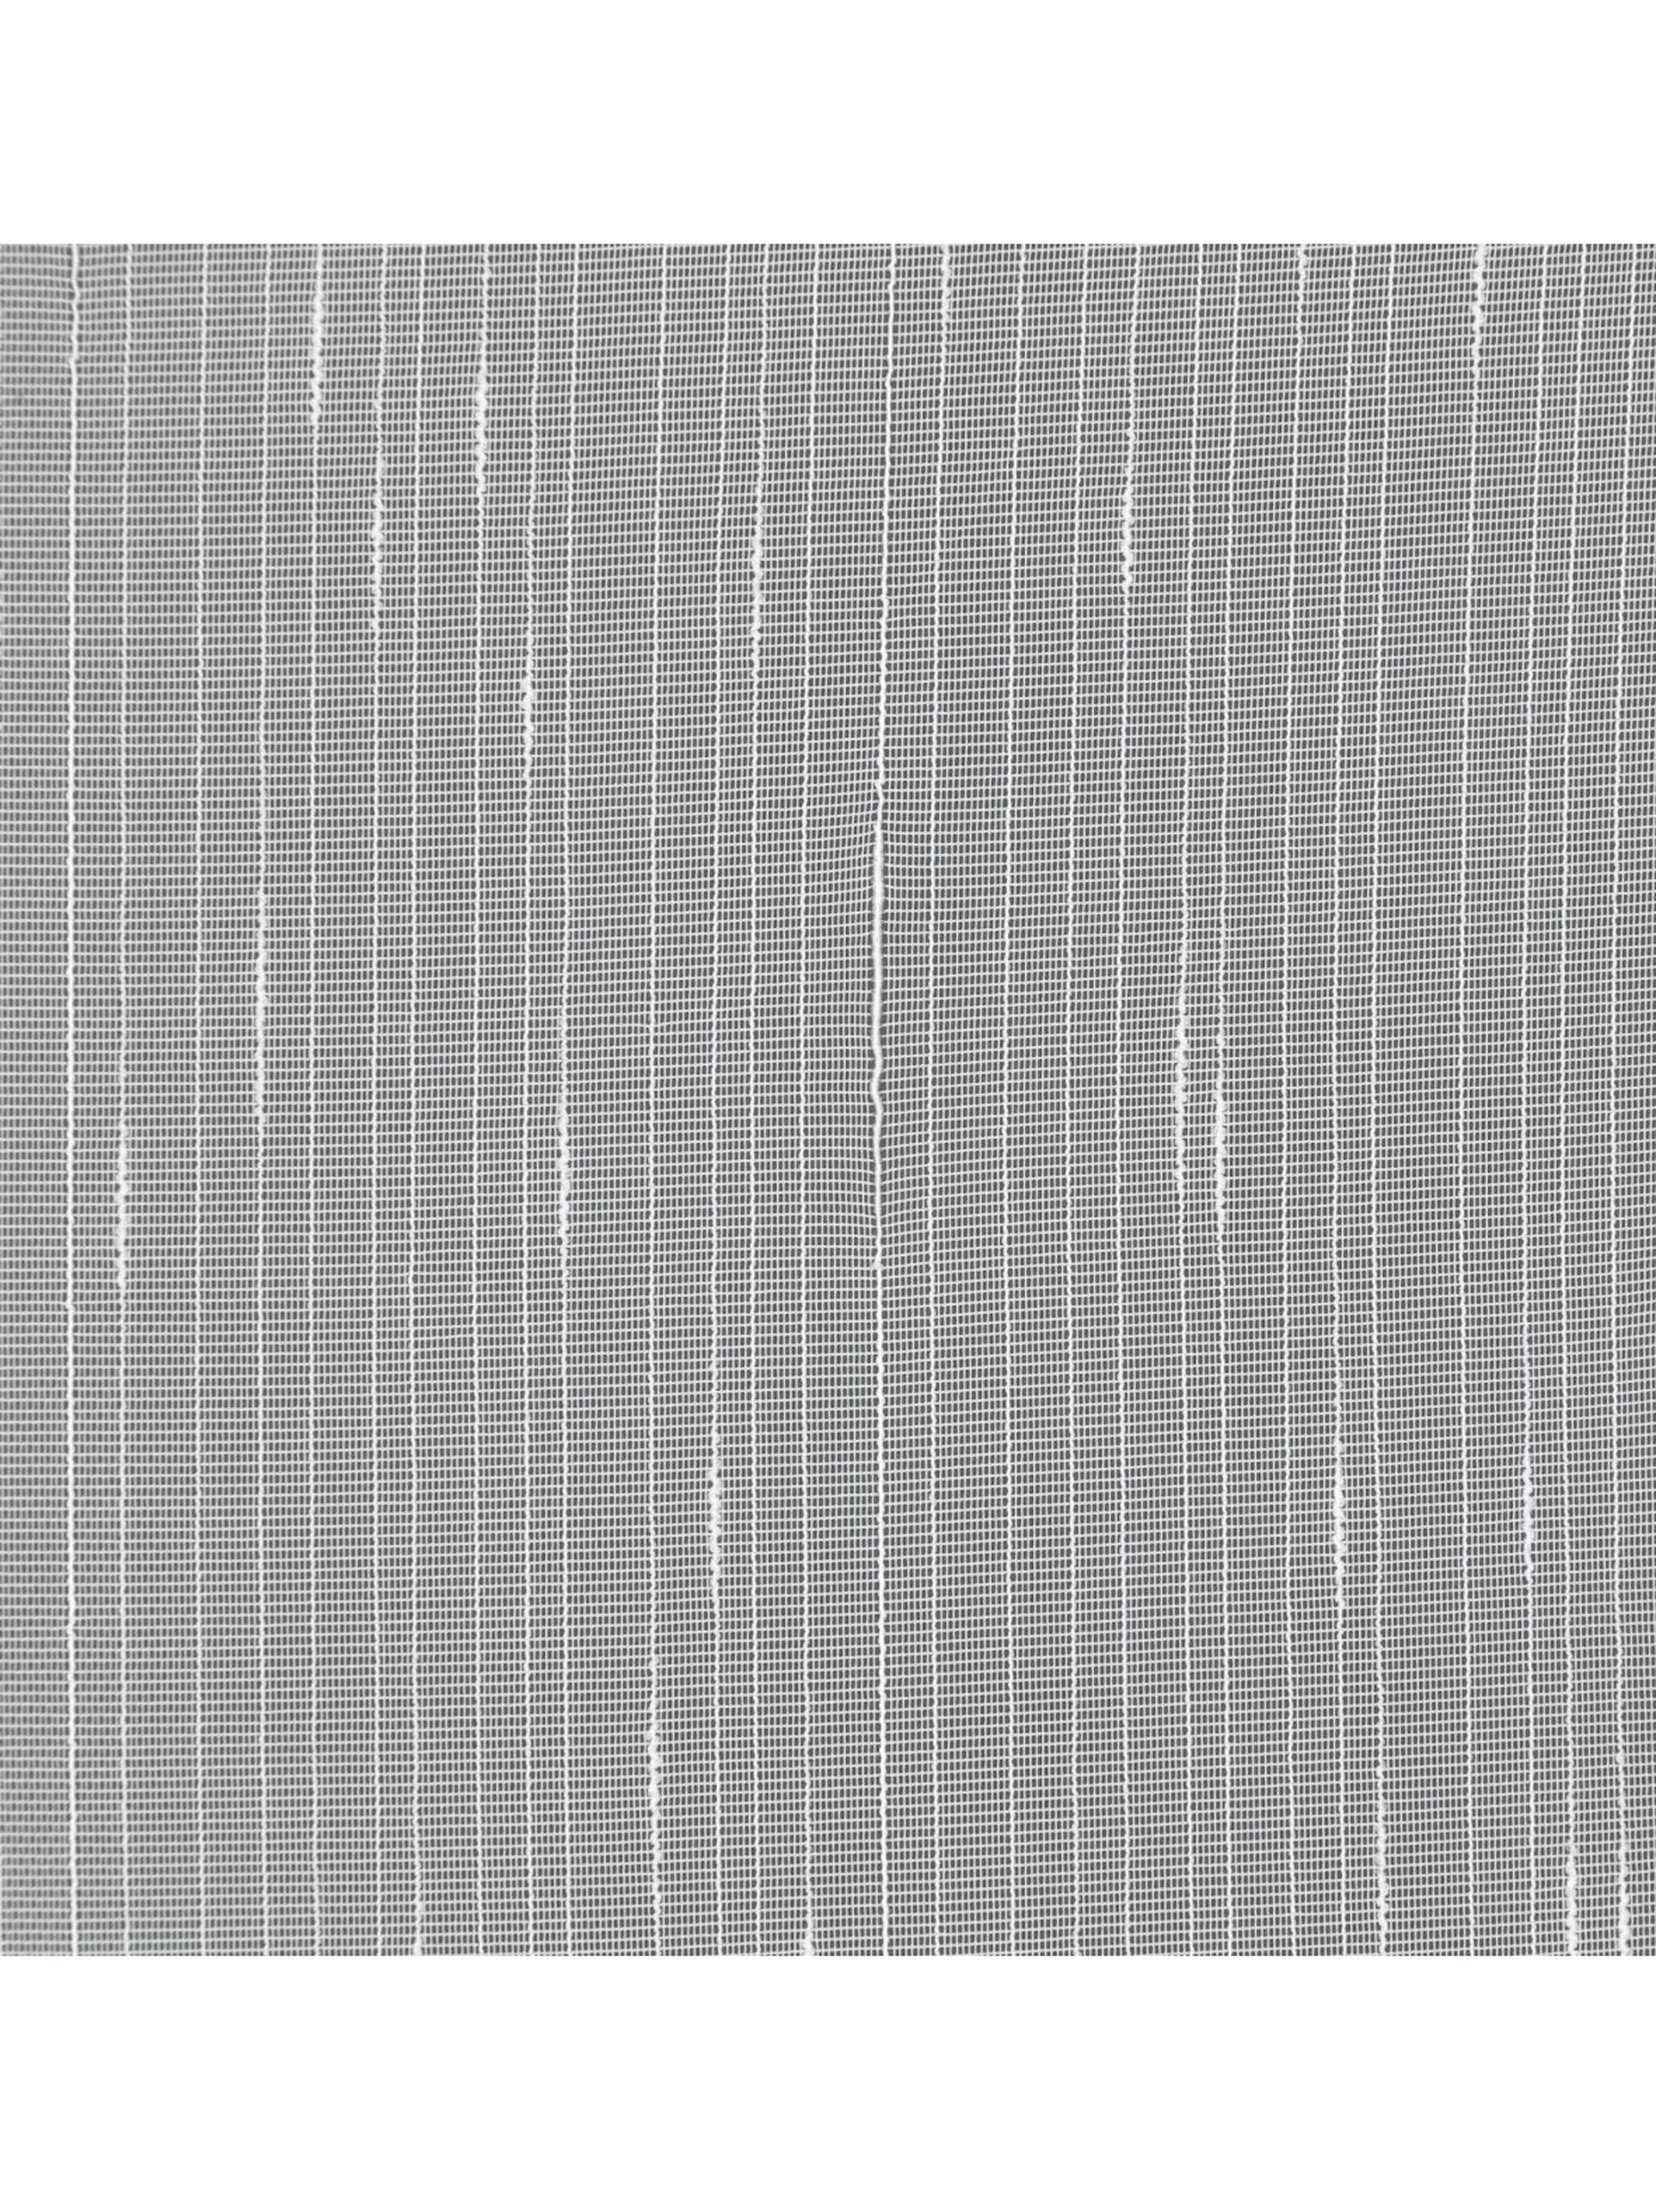 Biała firana na taśmie 140x250 cm przepuszczająca światło